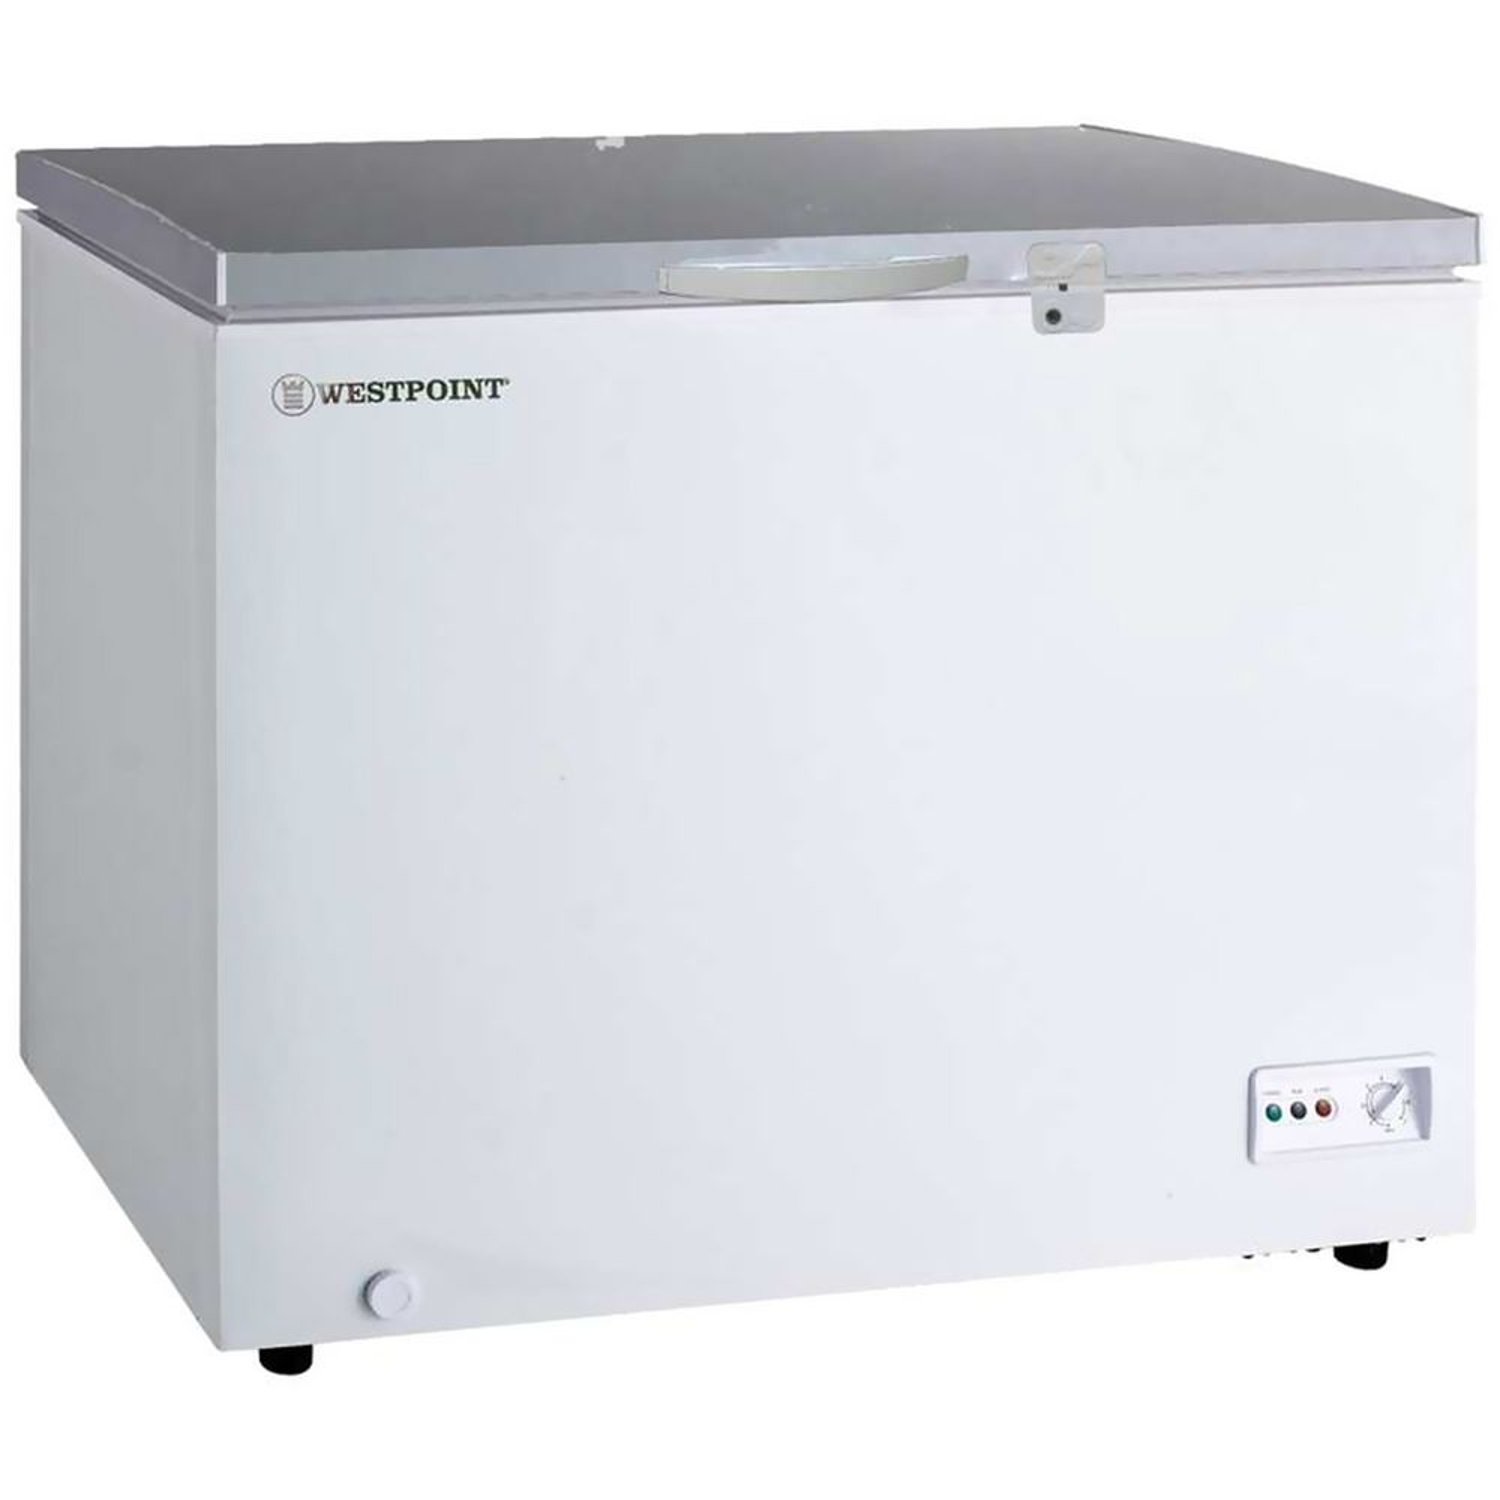 WestPoint 450L Chest Freezer Model - WBXN4519EGL